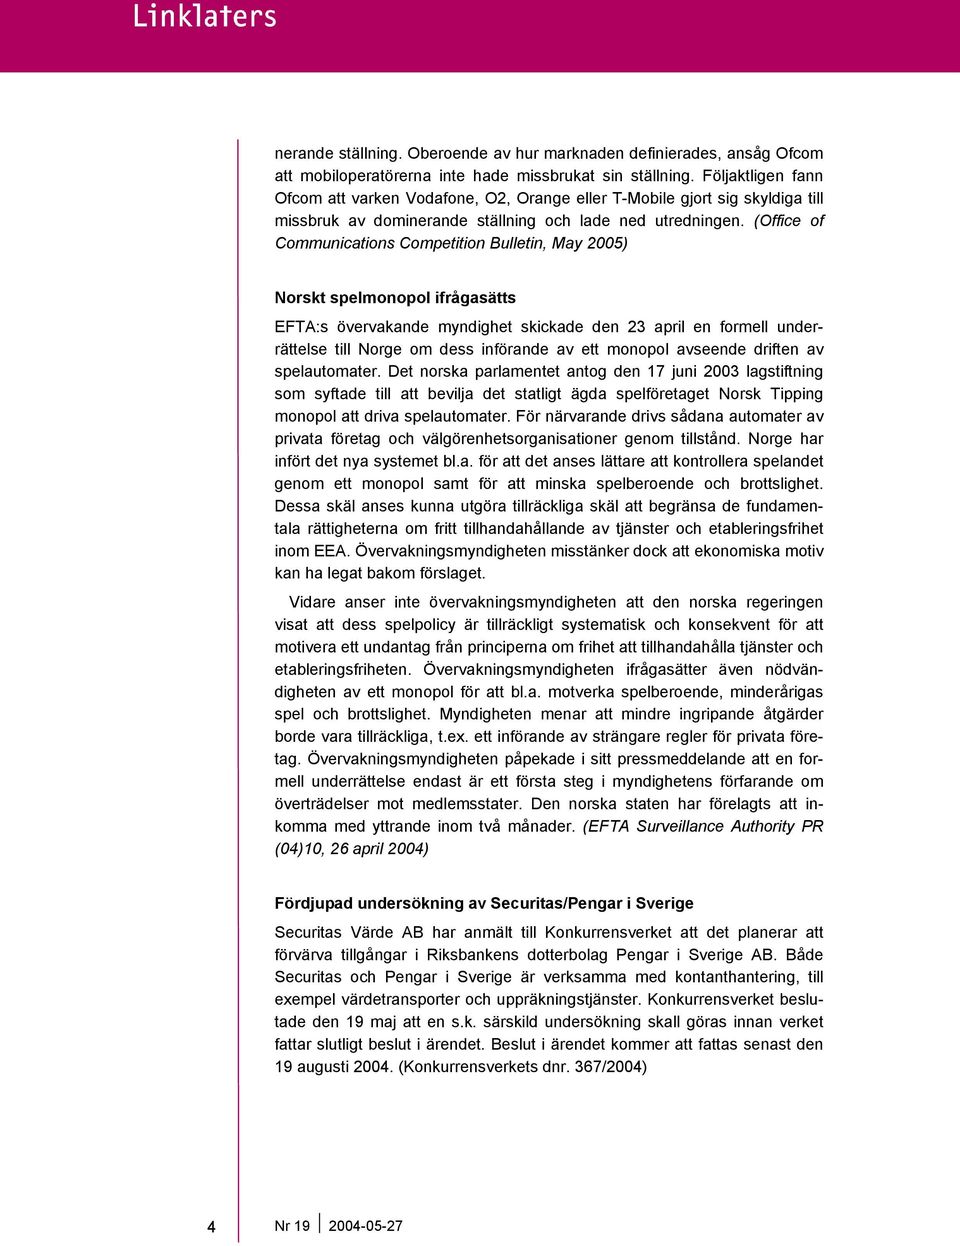 (Office of Communications Competition Bulletin, May 2005) Norskt spelmonopol ifrågasätts EFTA:s övervakande myndighet skickade den 23 april en formell underrättelse till Norge om dess införande av